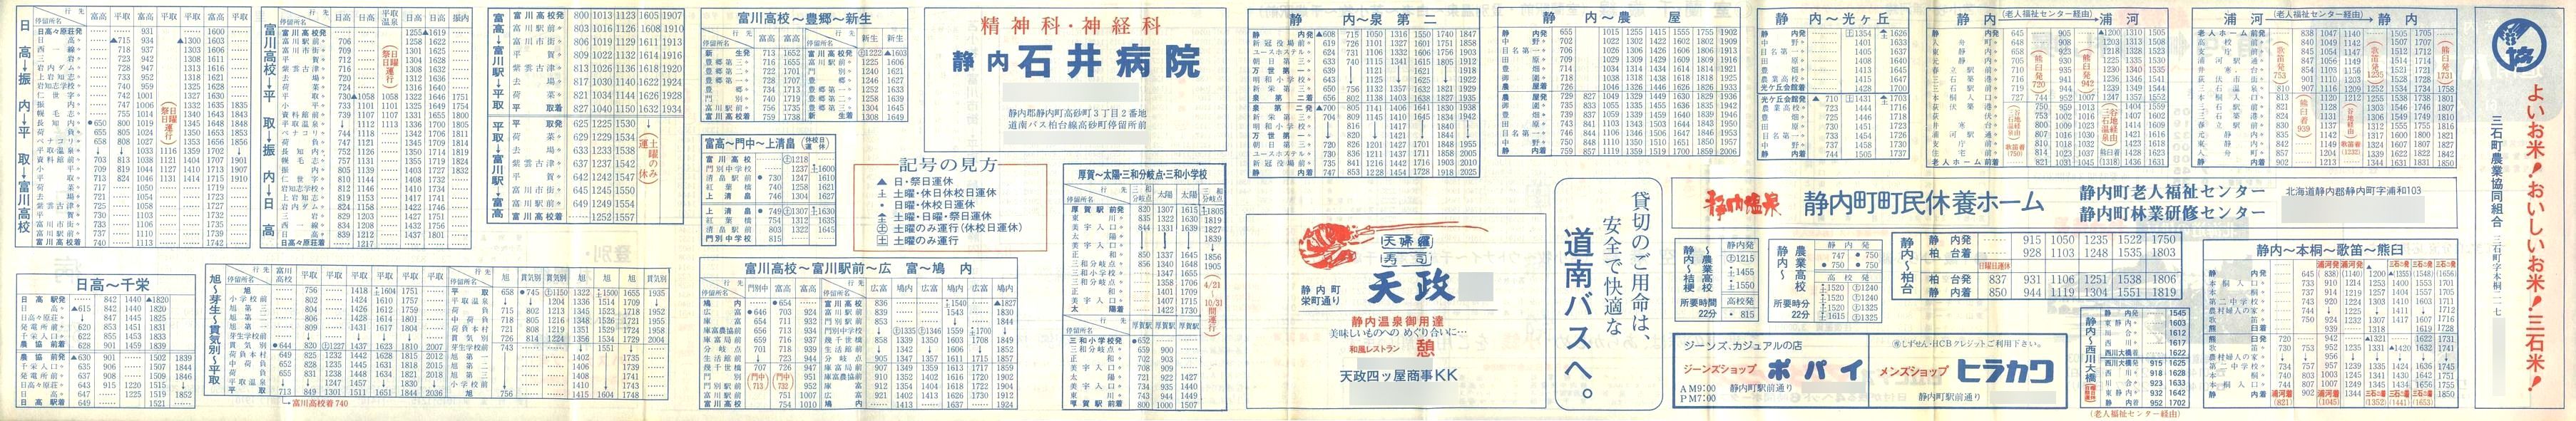 1986-04-01改正_道南バス_日高管内時刻表裏面